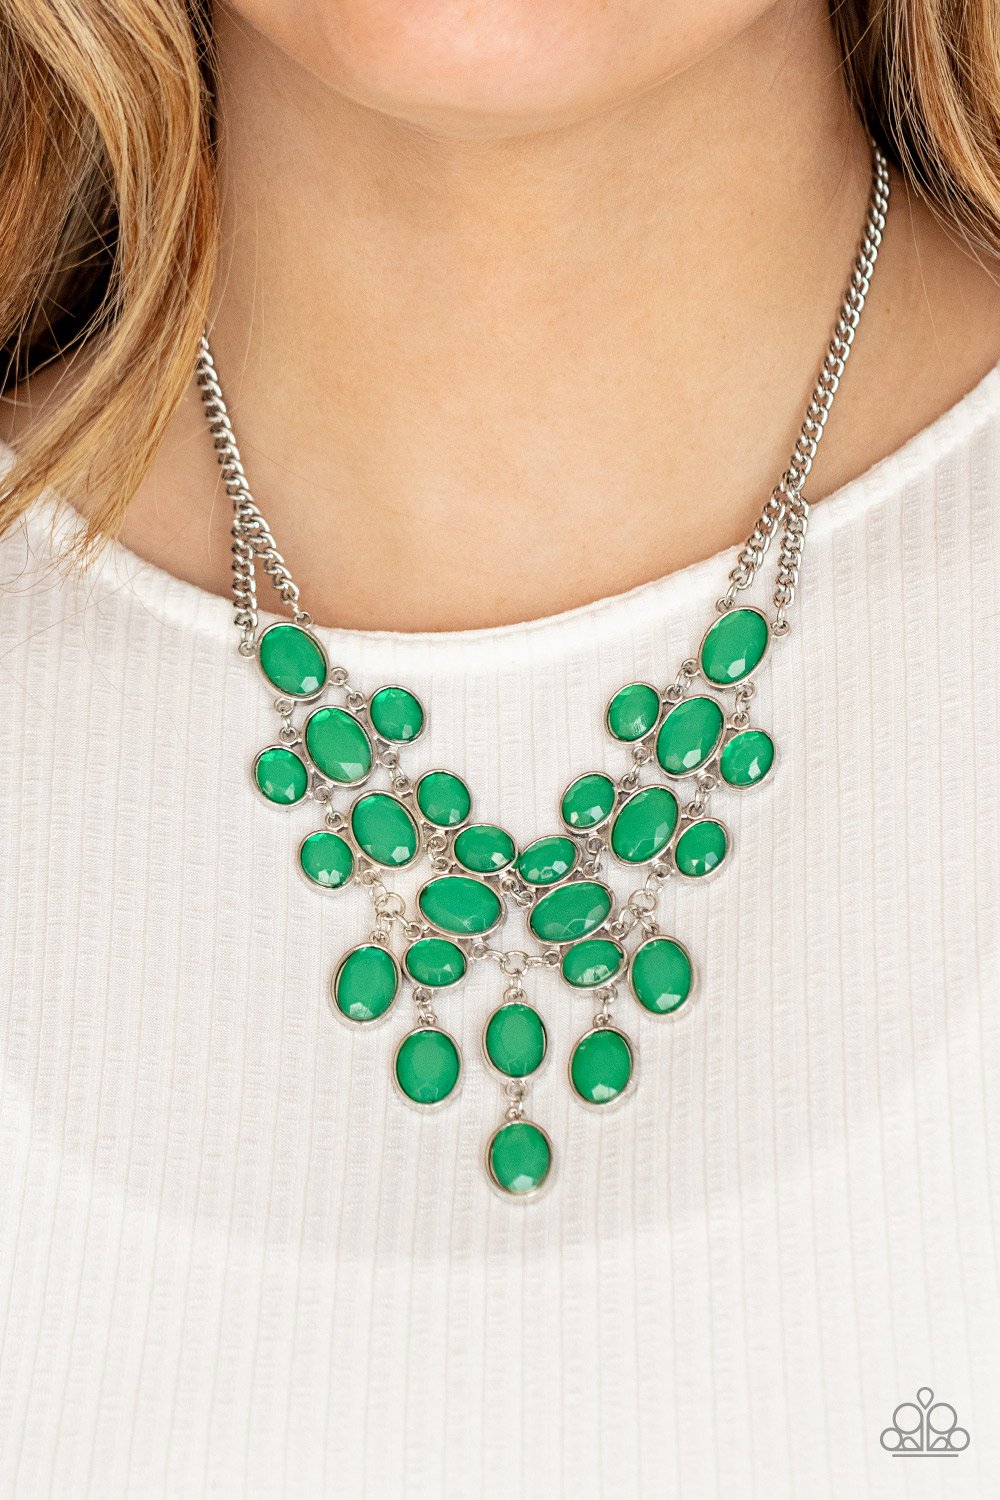 Serene Gleam Green Necklace